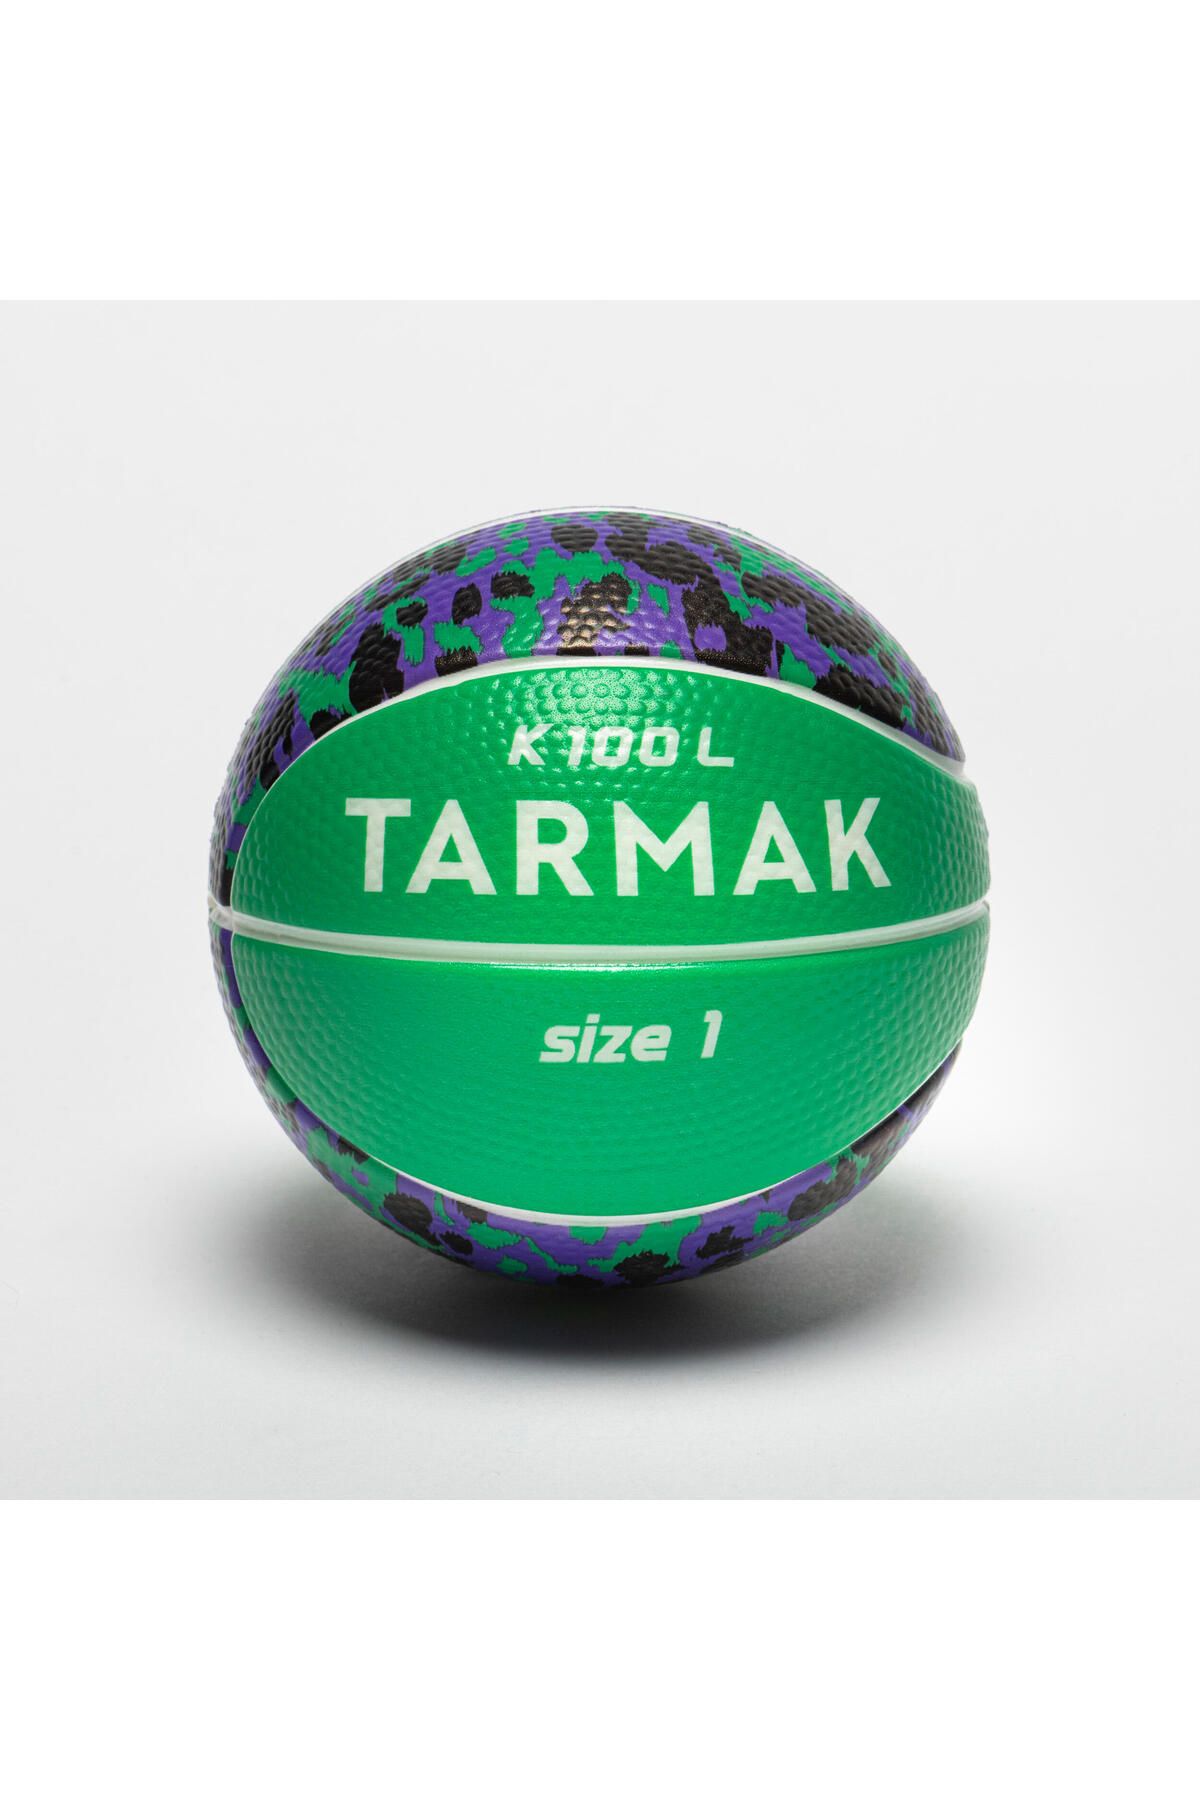 Tarmak Çocuk Basketbol Topu - 1 Numara - Yeşil / Siyah - K100 Sünger